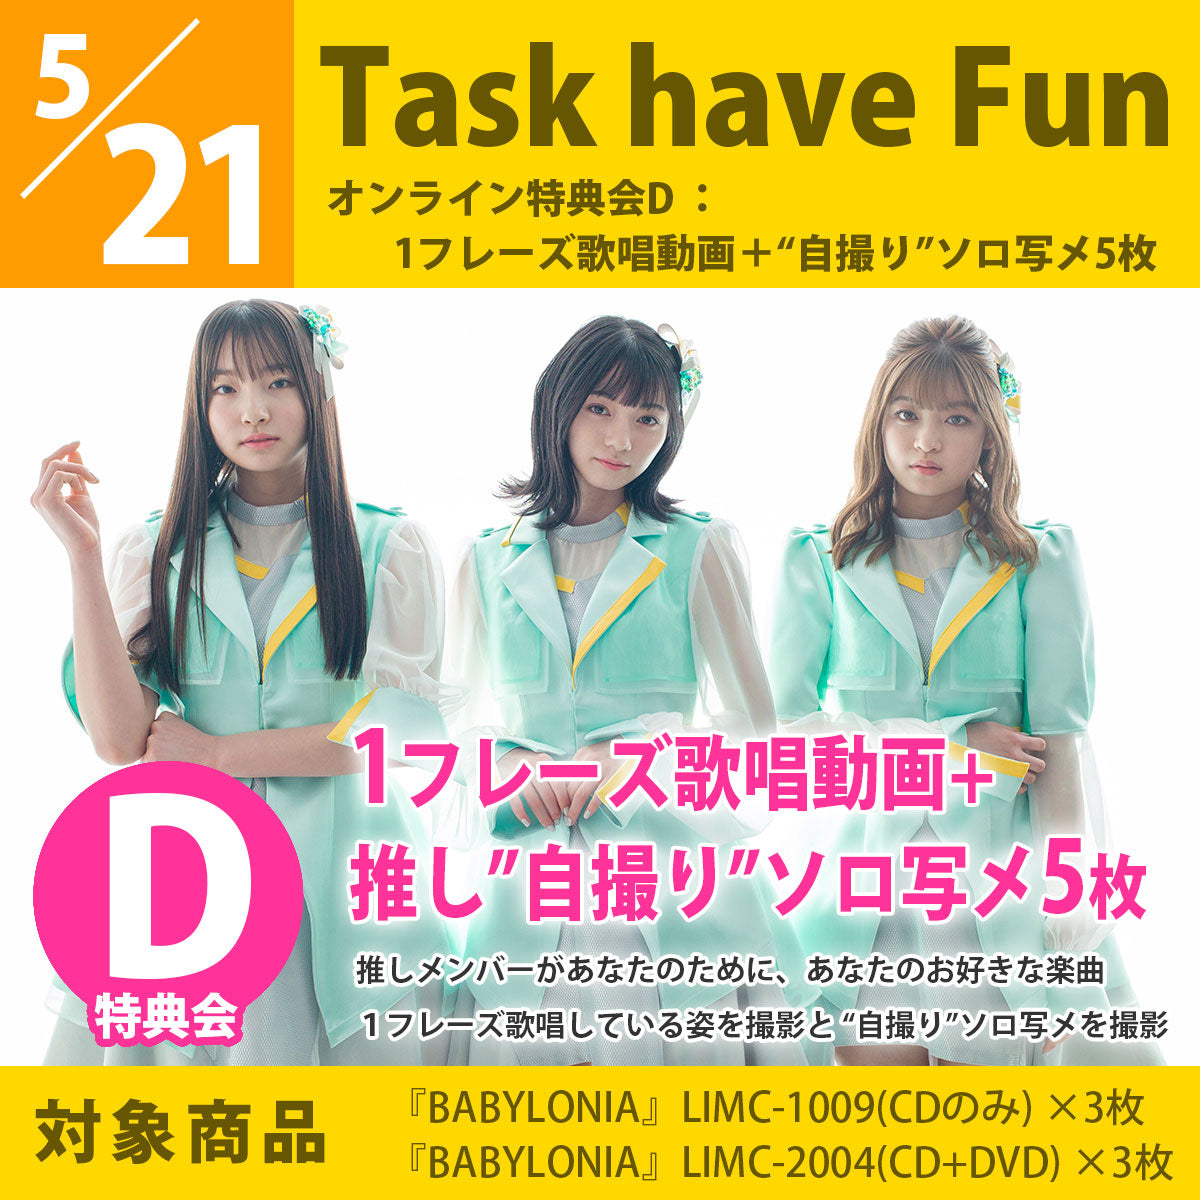 【特典会対象商品】5/21（金）「Task have Fun」特典会D 1フレーズ歌唱動画＋自撮りソロ写メ5枚